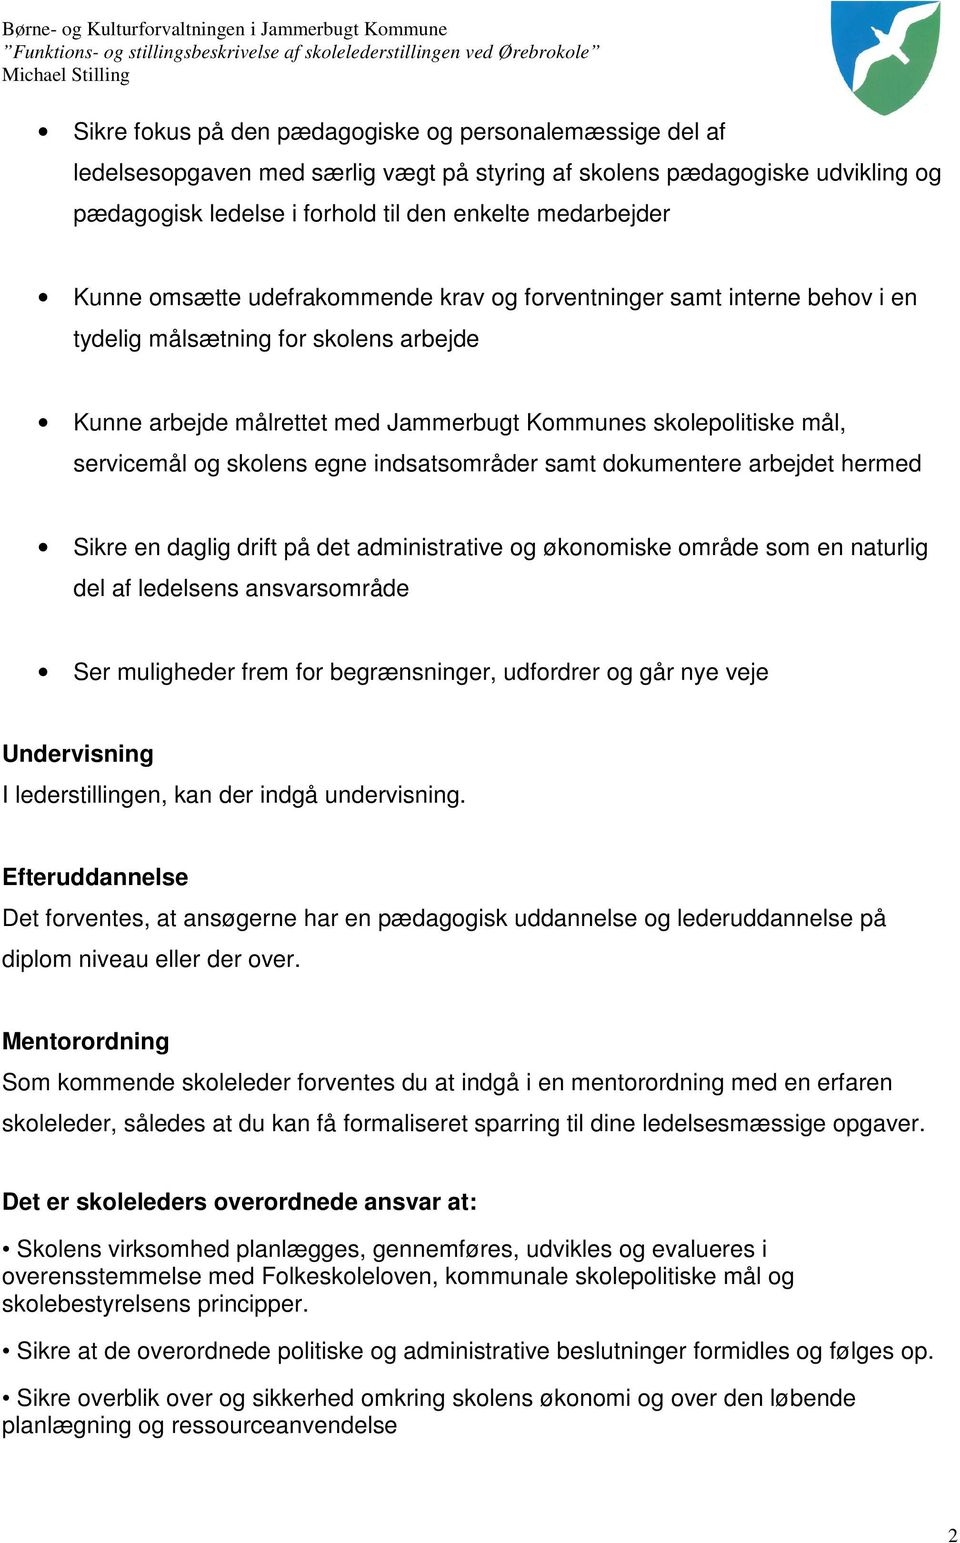 Funktions- og stillingsbeskrivelse af skolelederstillingen på Ørebroskolen  - PDF Gratis download